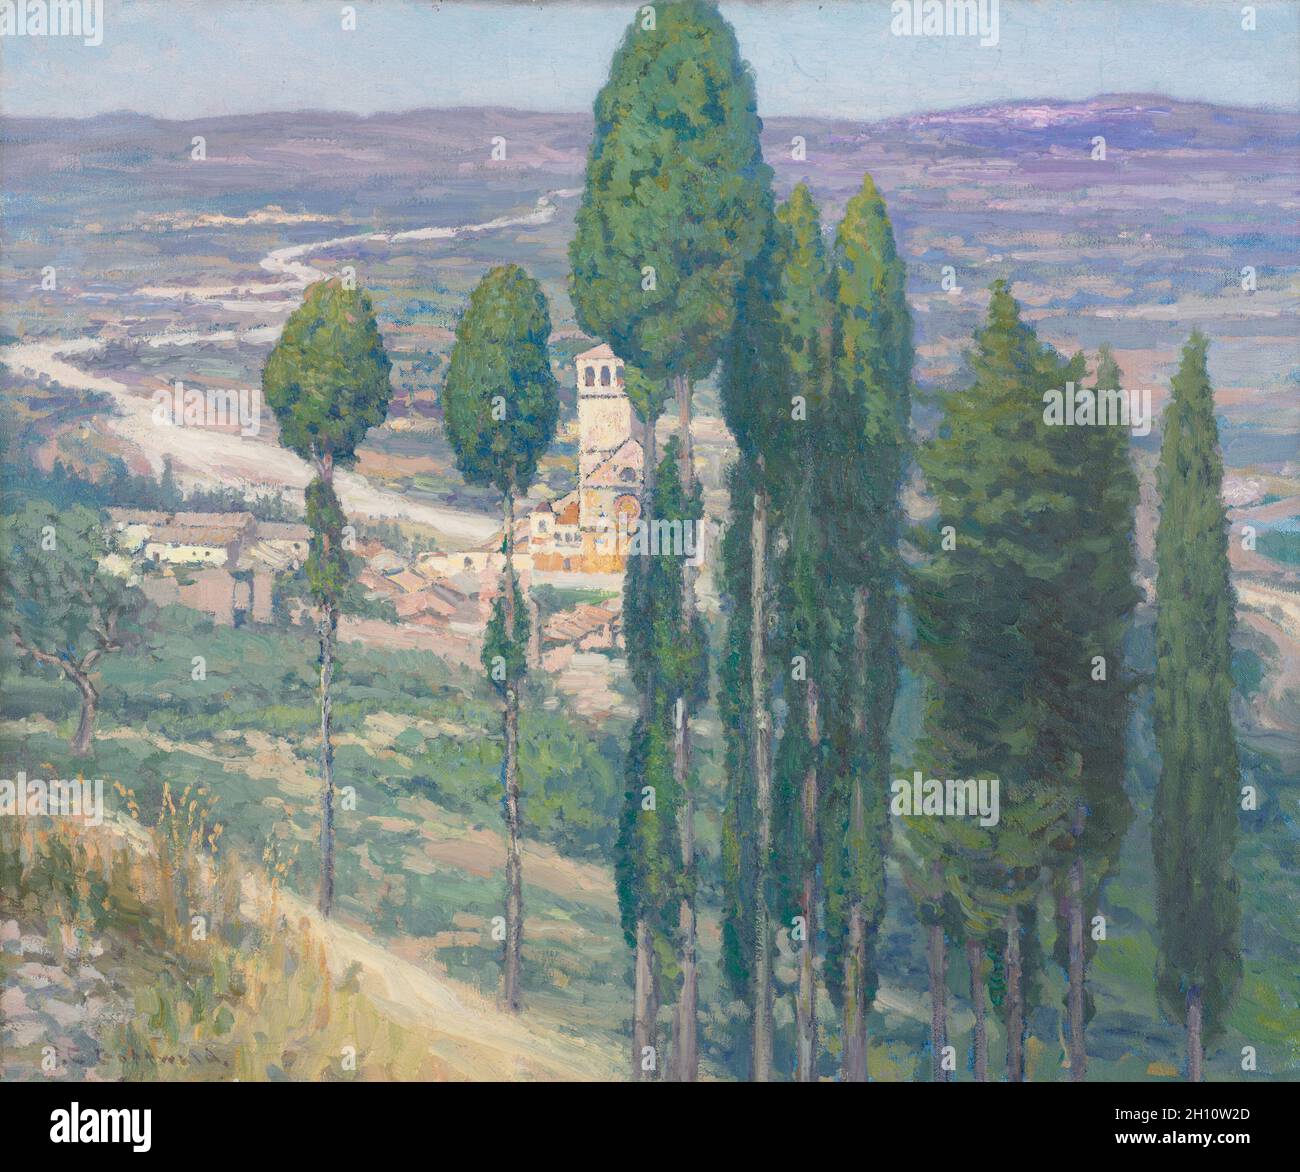 La vallée de l'Ombrie, Italie, 1914.Frederick Gottwald (américain, 1860-1941).Huile sur toile; sans cadre: 72.8 x 60.4 cm (28 11/16 x 23 3/4 in.). Banque D'Images